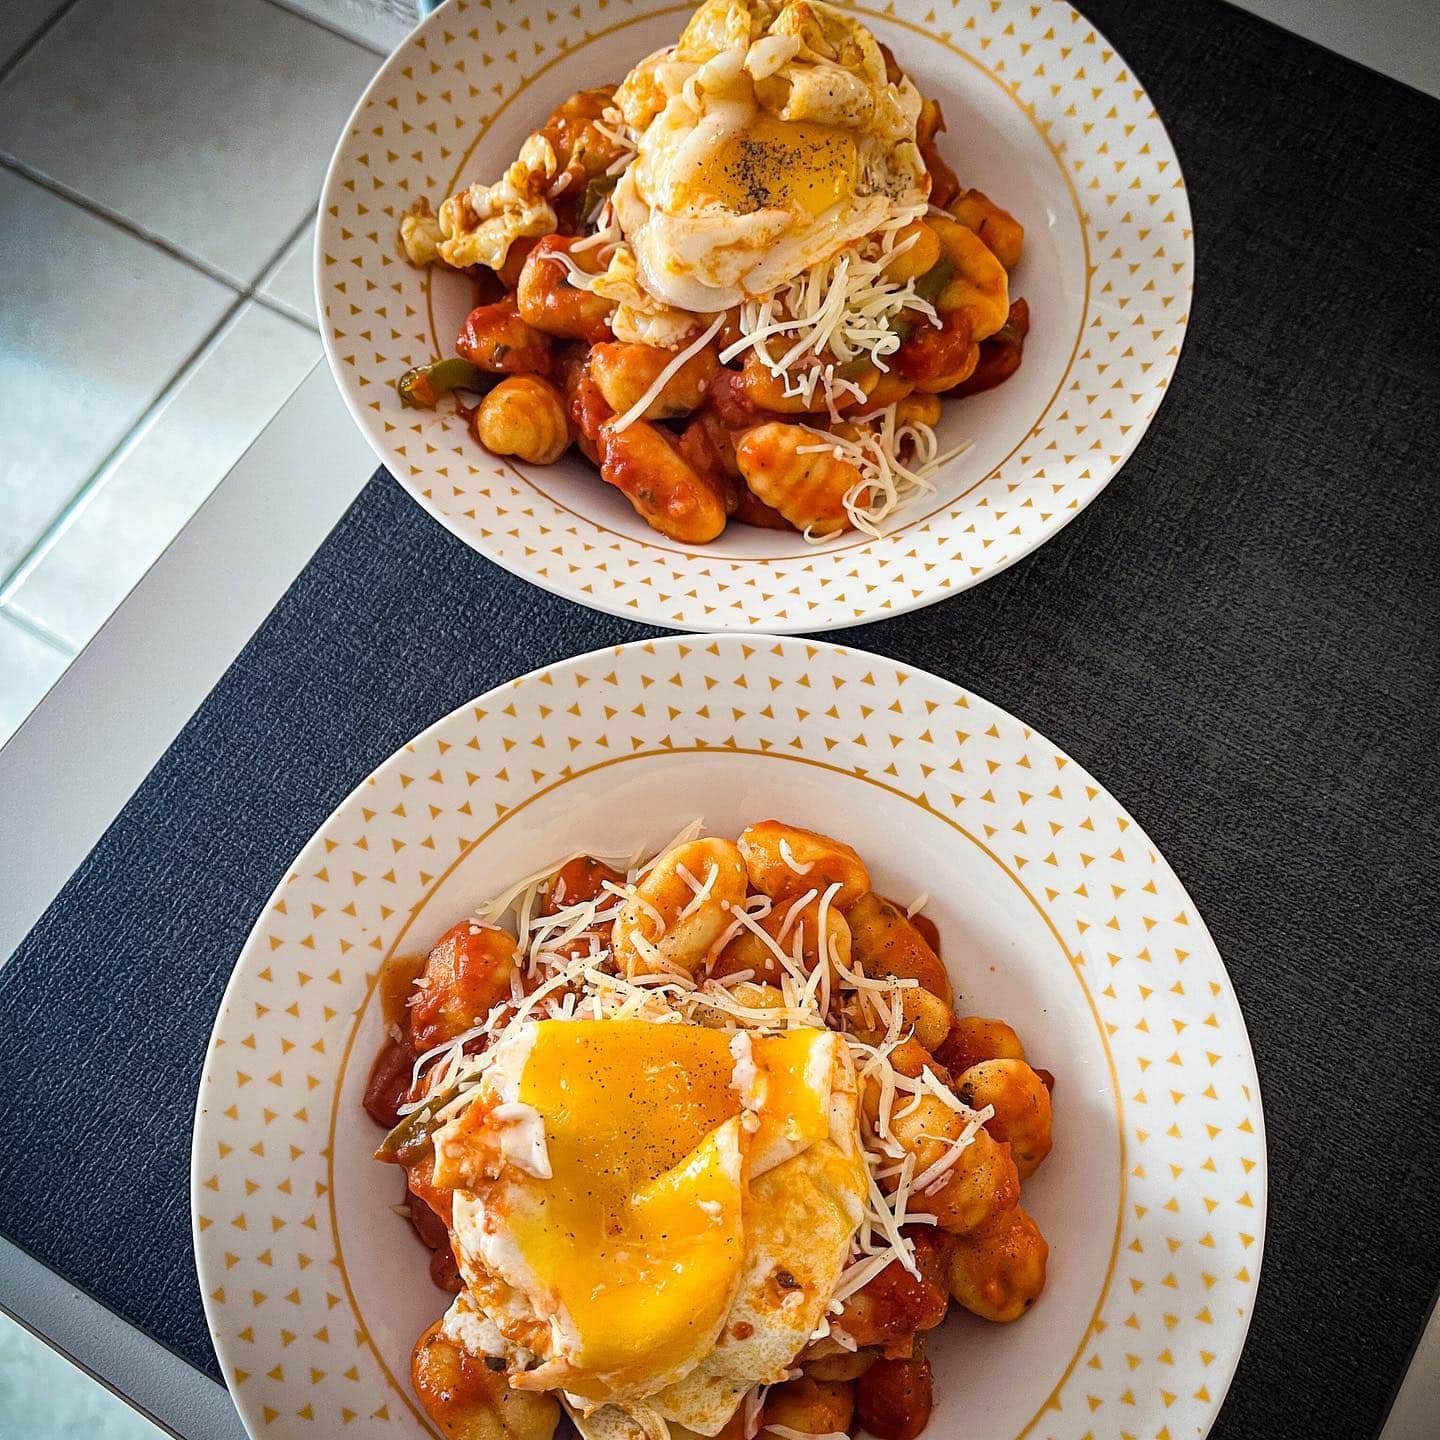 [𝙶𝚗𝚘𝚌𝚌𝚑𝚒𝚜 𝚙𝚘𝚒𝚟𝚛𝚘𝚗𝚜-𝚝𝚘𝚖𝚊𝚝𝚎 🍅]

Simplicité et efficacité avec ces gnocchis accompagnés de poivrons grillés et d’une sauce tomate au basilic 🥰.
Le petit plus pour les grosses faims, l’œuf au plat par dessus 😊.

———————————————————————

#cuisinemoi #recette #recettefacile #recettesimple #recetterapide #blogcuisine #blogolyon #gnocchis #poelée #legumes #poivrons #basilic  #tomate #homemade #homemadefood #food #foodpics